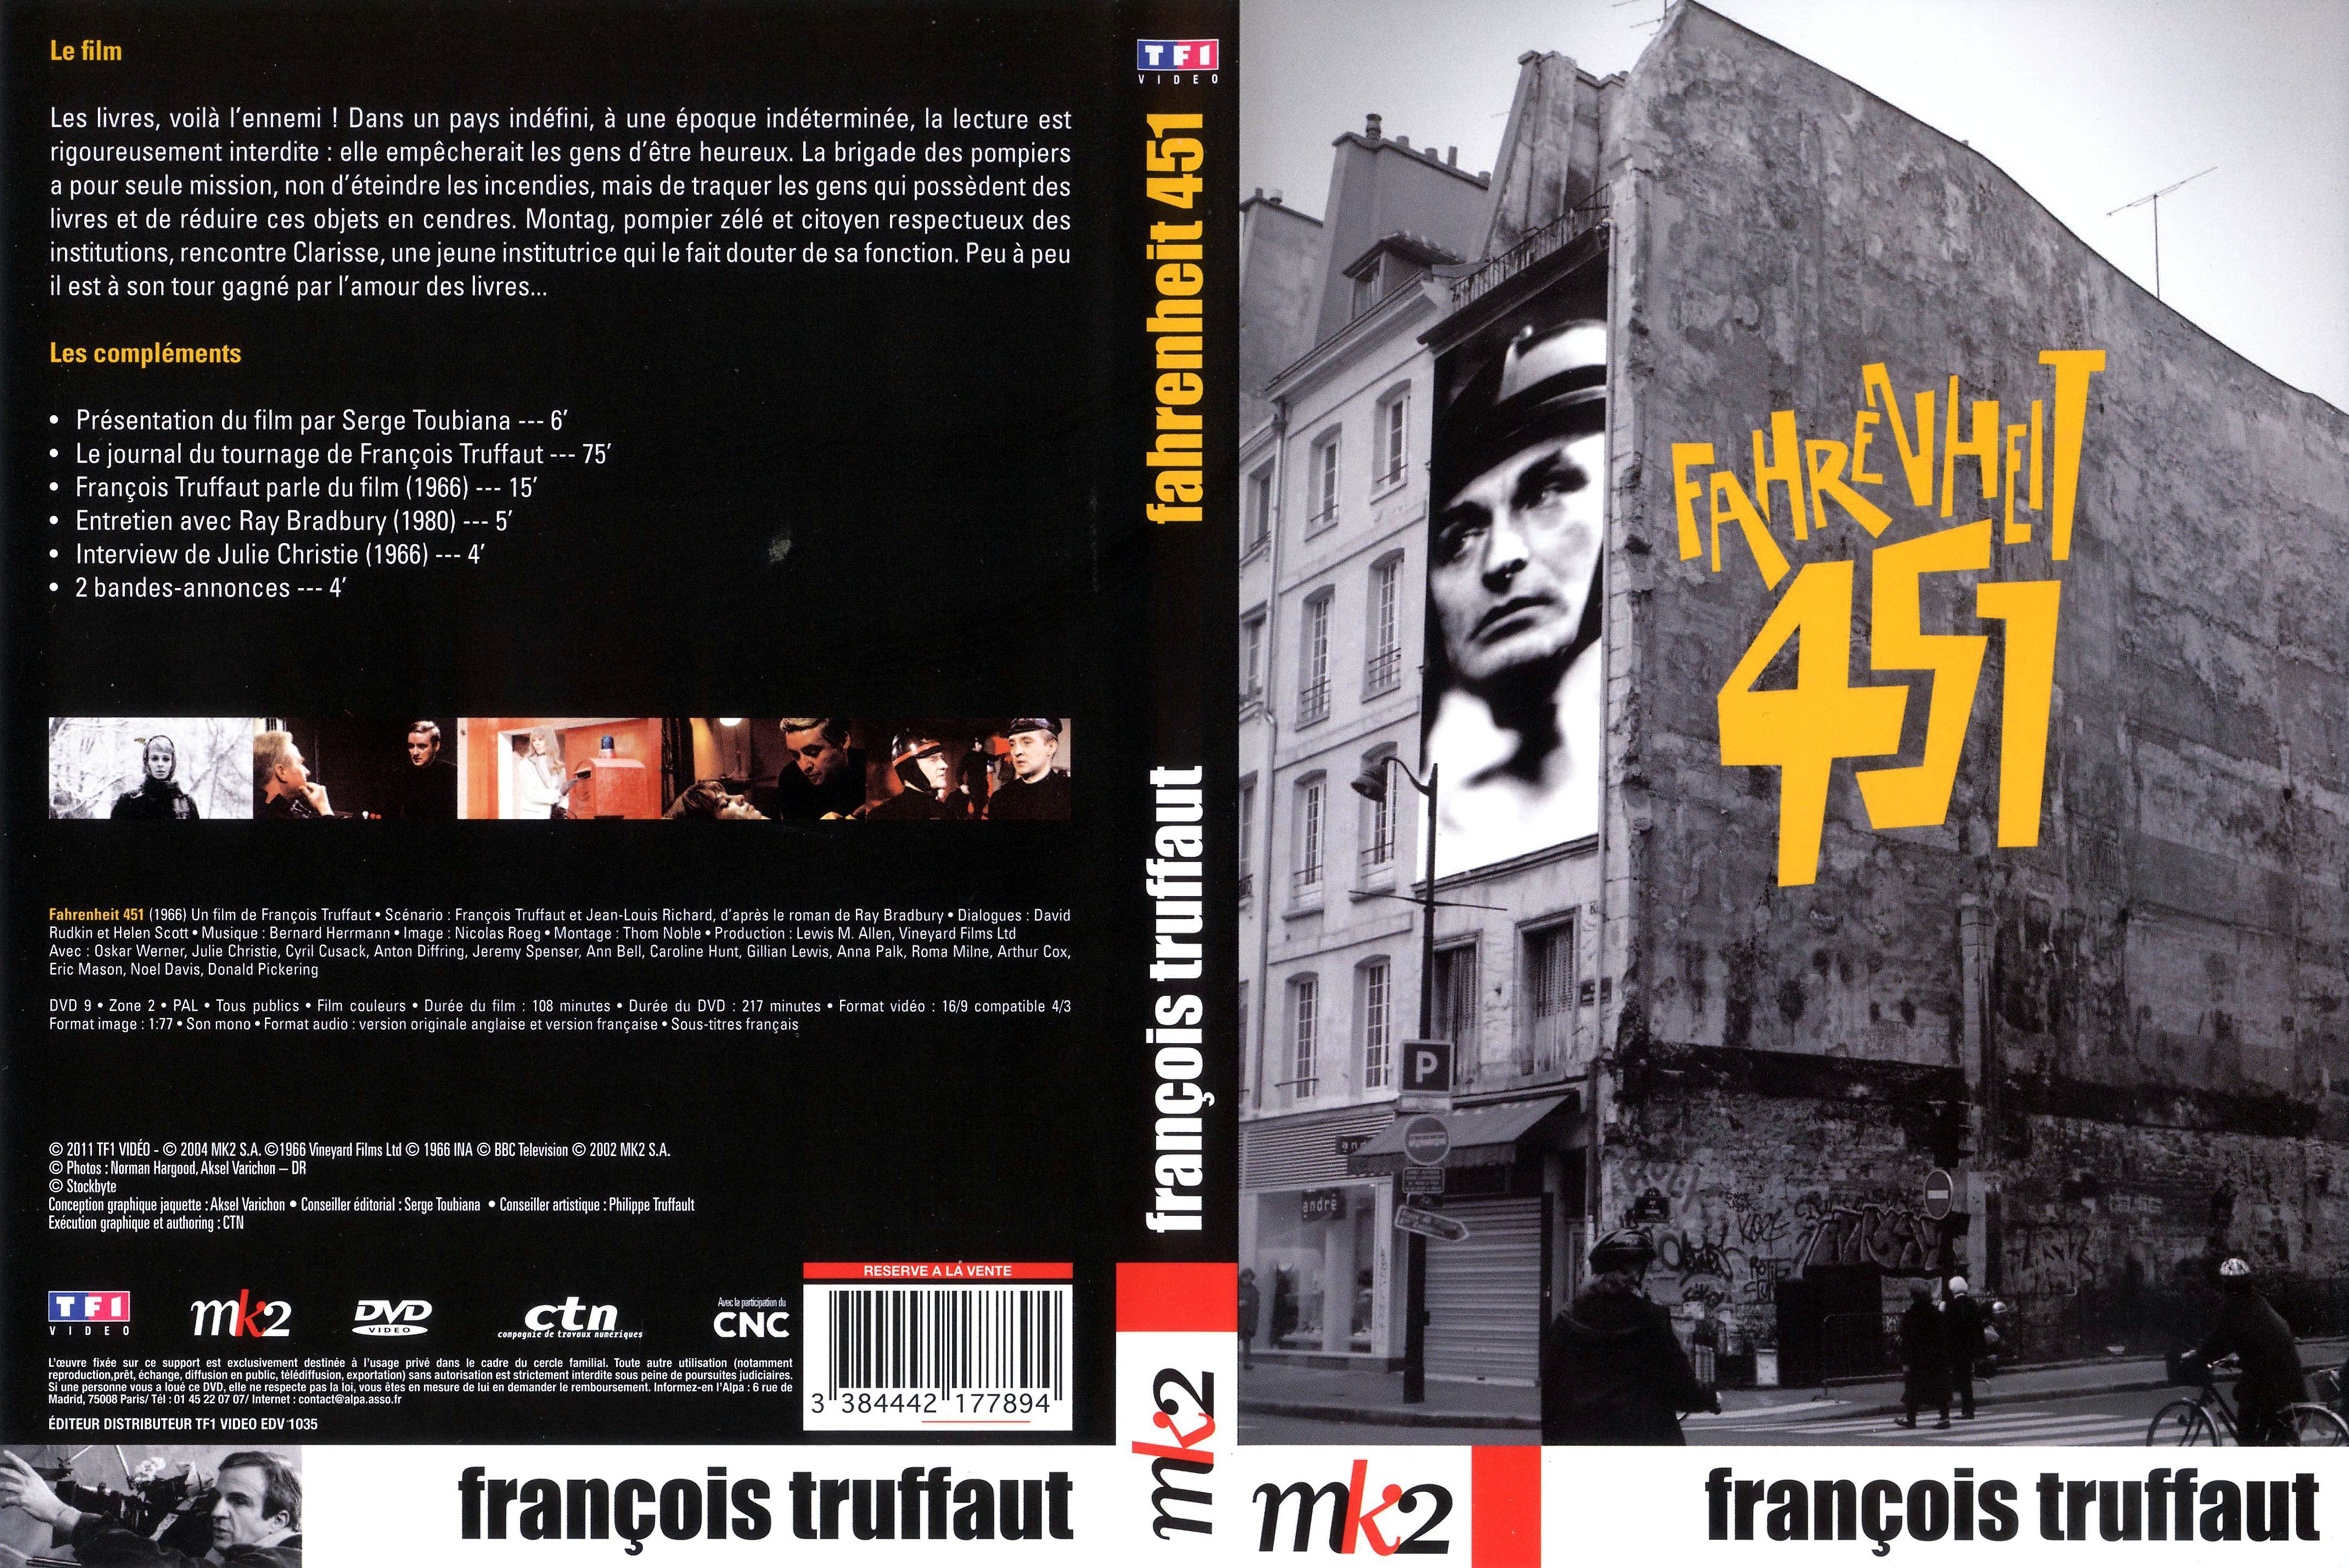 Jaquette DVD Fahrenheit 451 v2